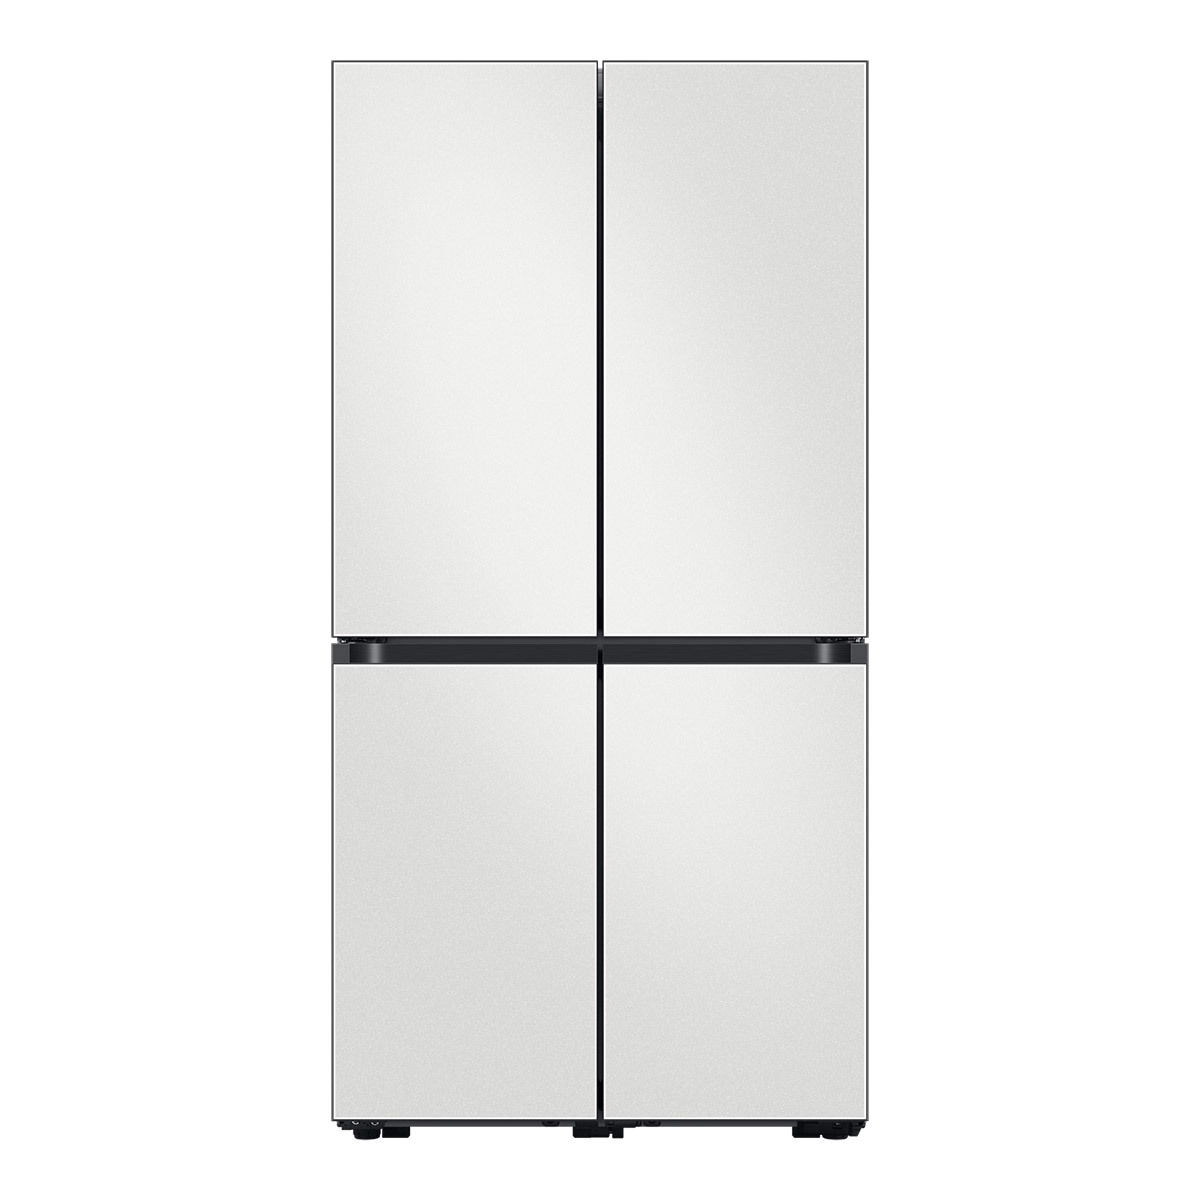 삼성 비스포크 쇼케이스 냉장고 865L - 코타 화이트